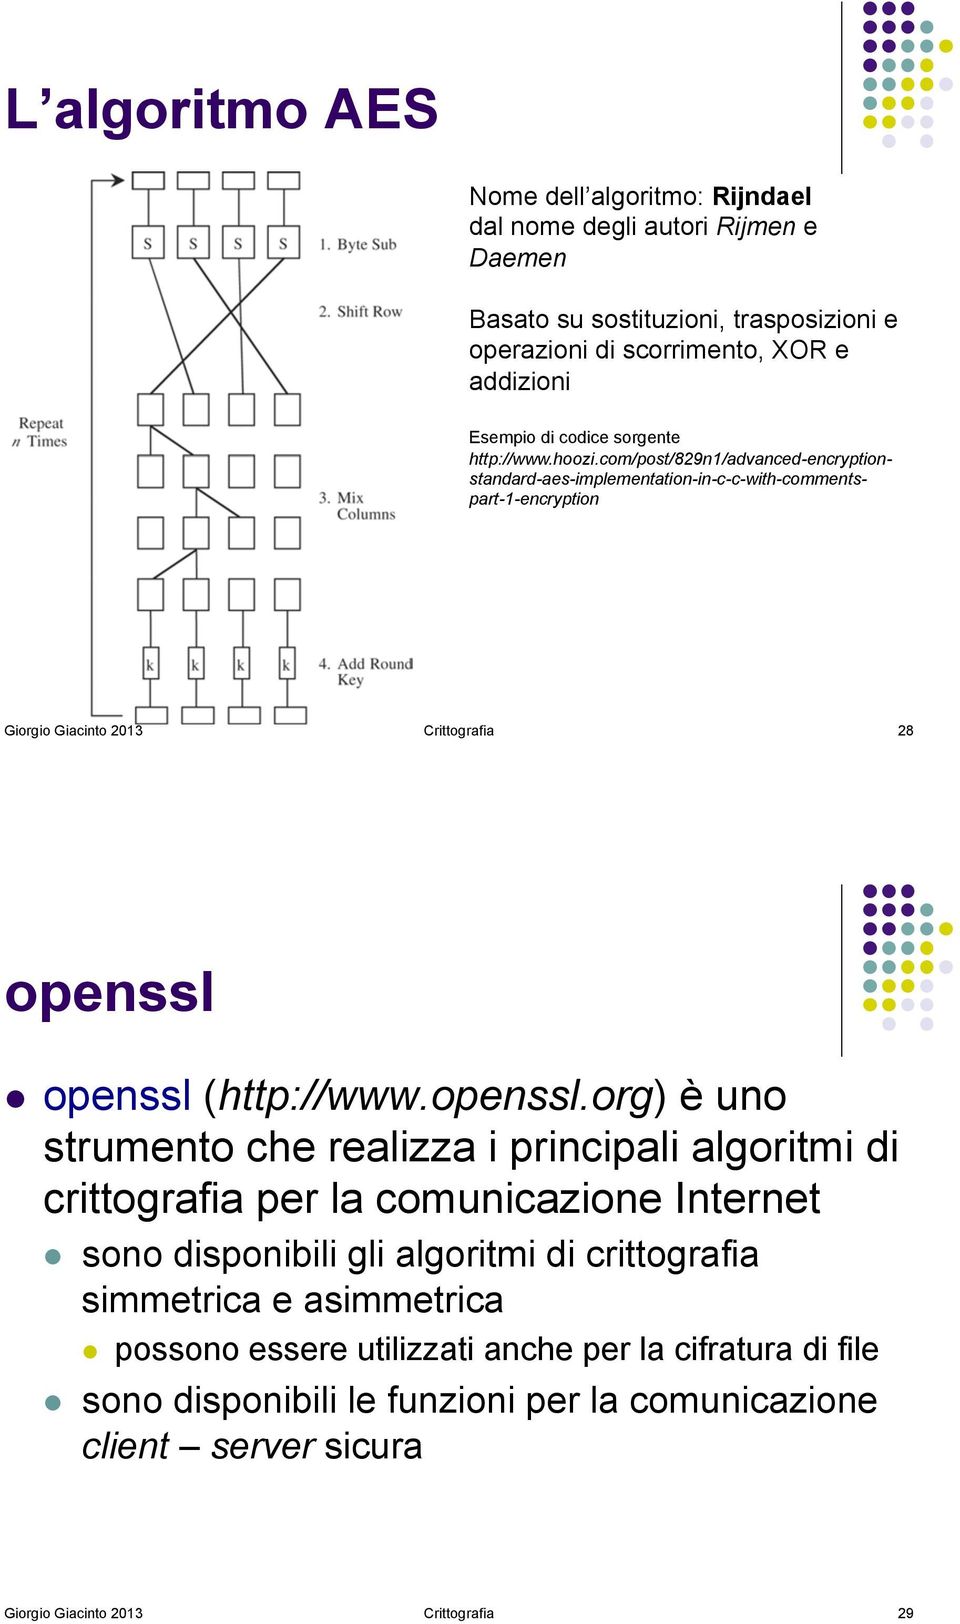 openssl (http://www.openssl.org) è uno strumento che realizza i principali algoritmi di crittografia per la comunicazione Internet!